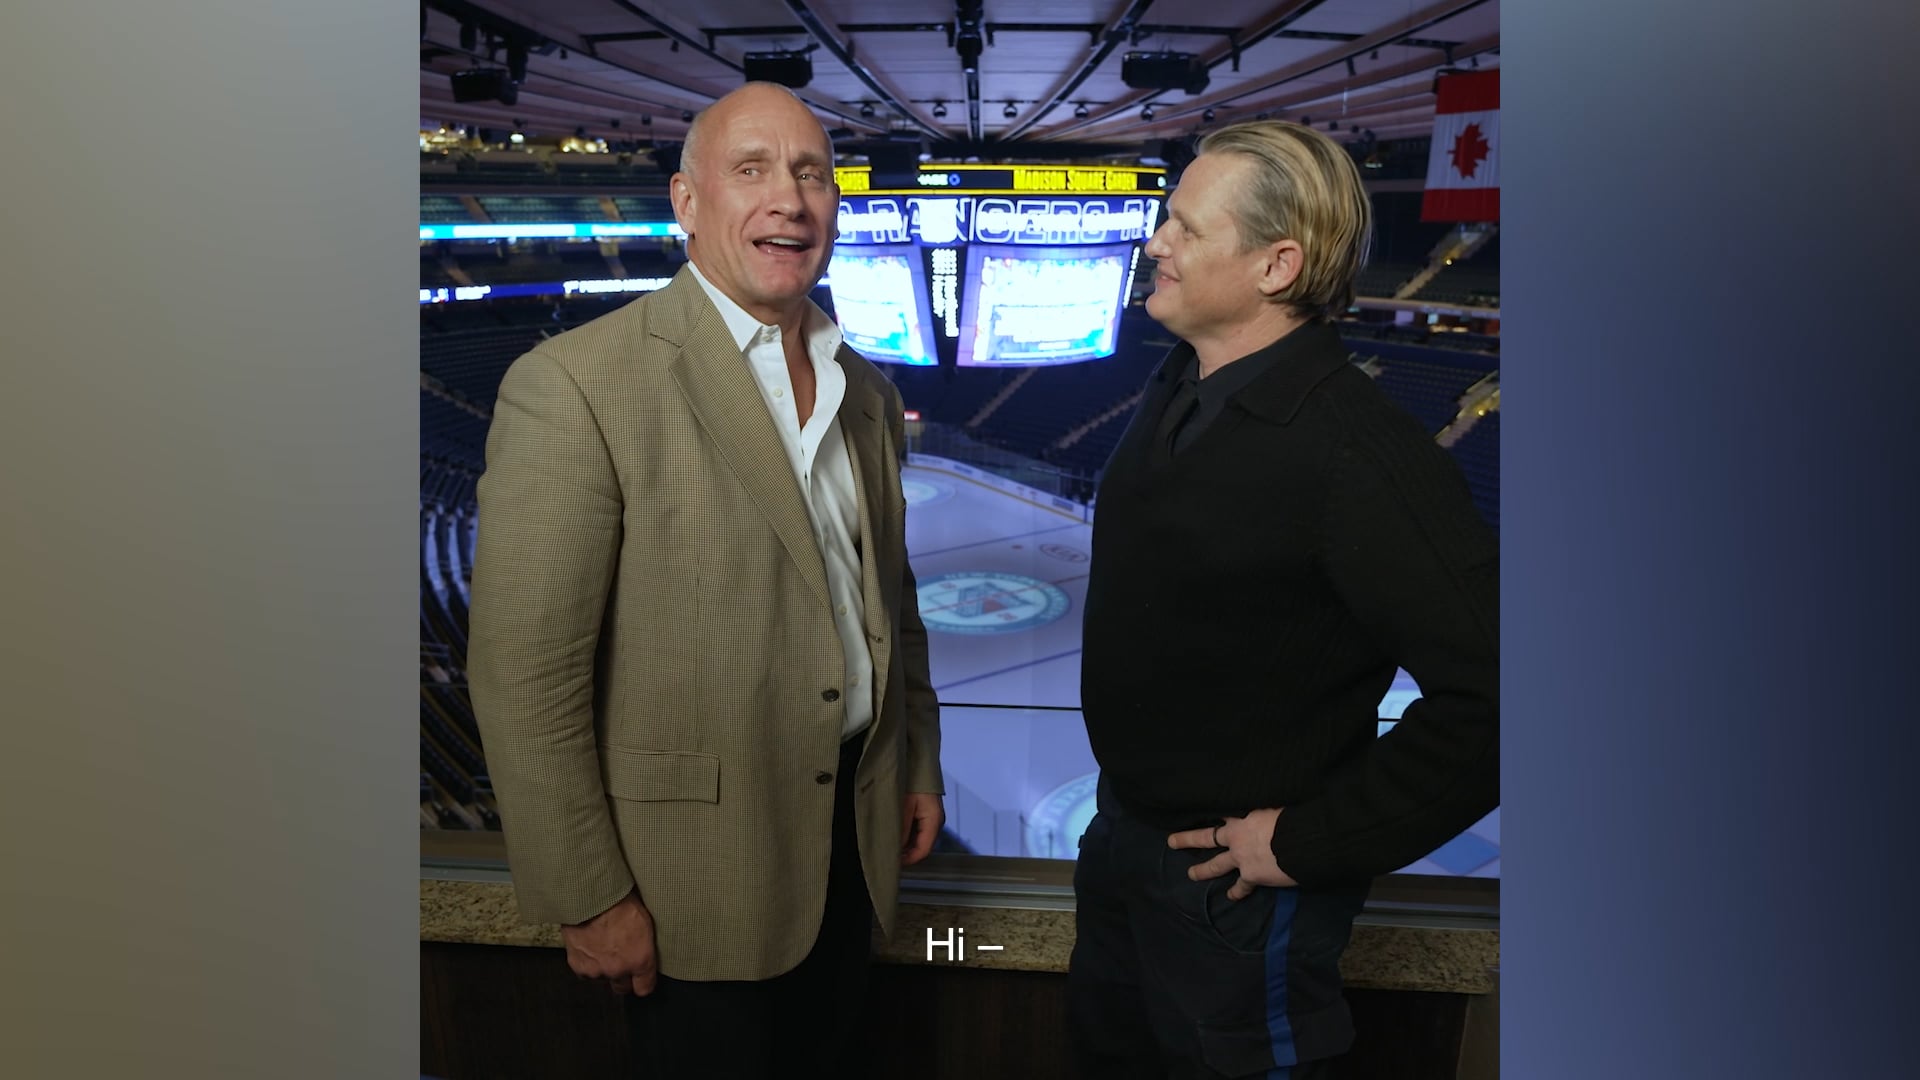 Madison Square Garden | The New York Rangers "Line Change" EMS Inside MSG Digital Spot